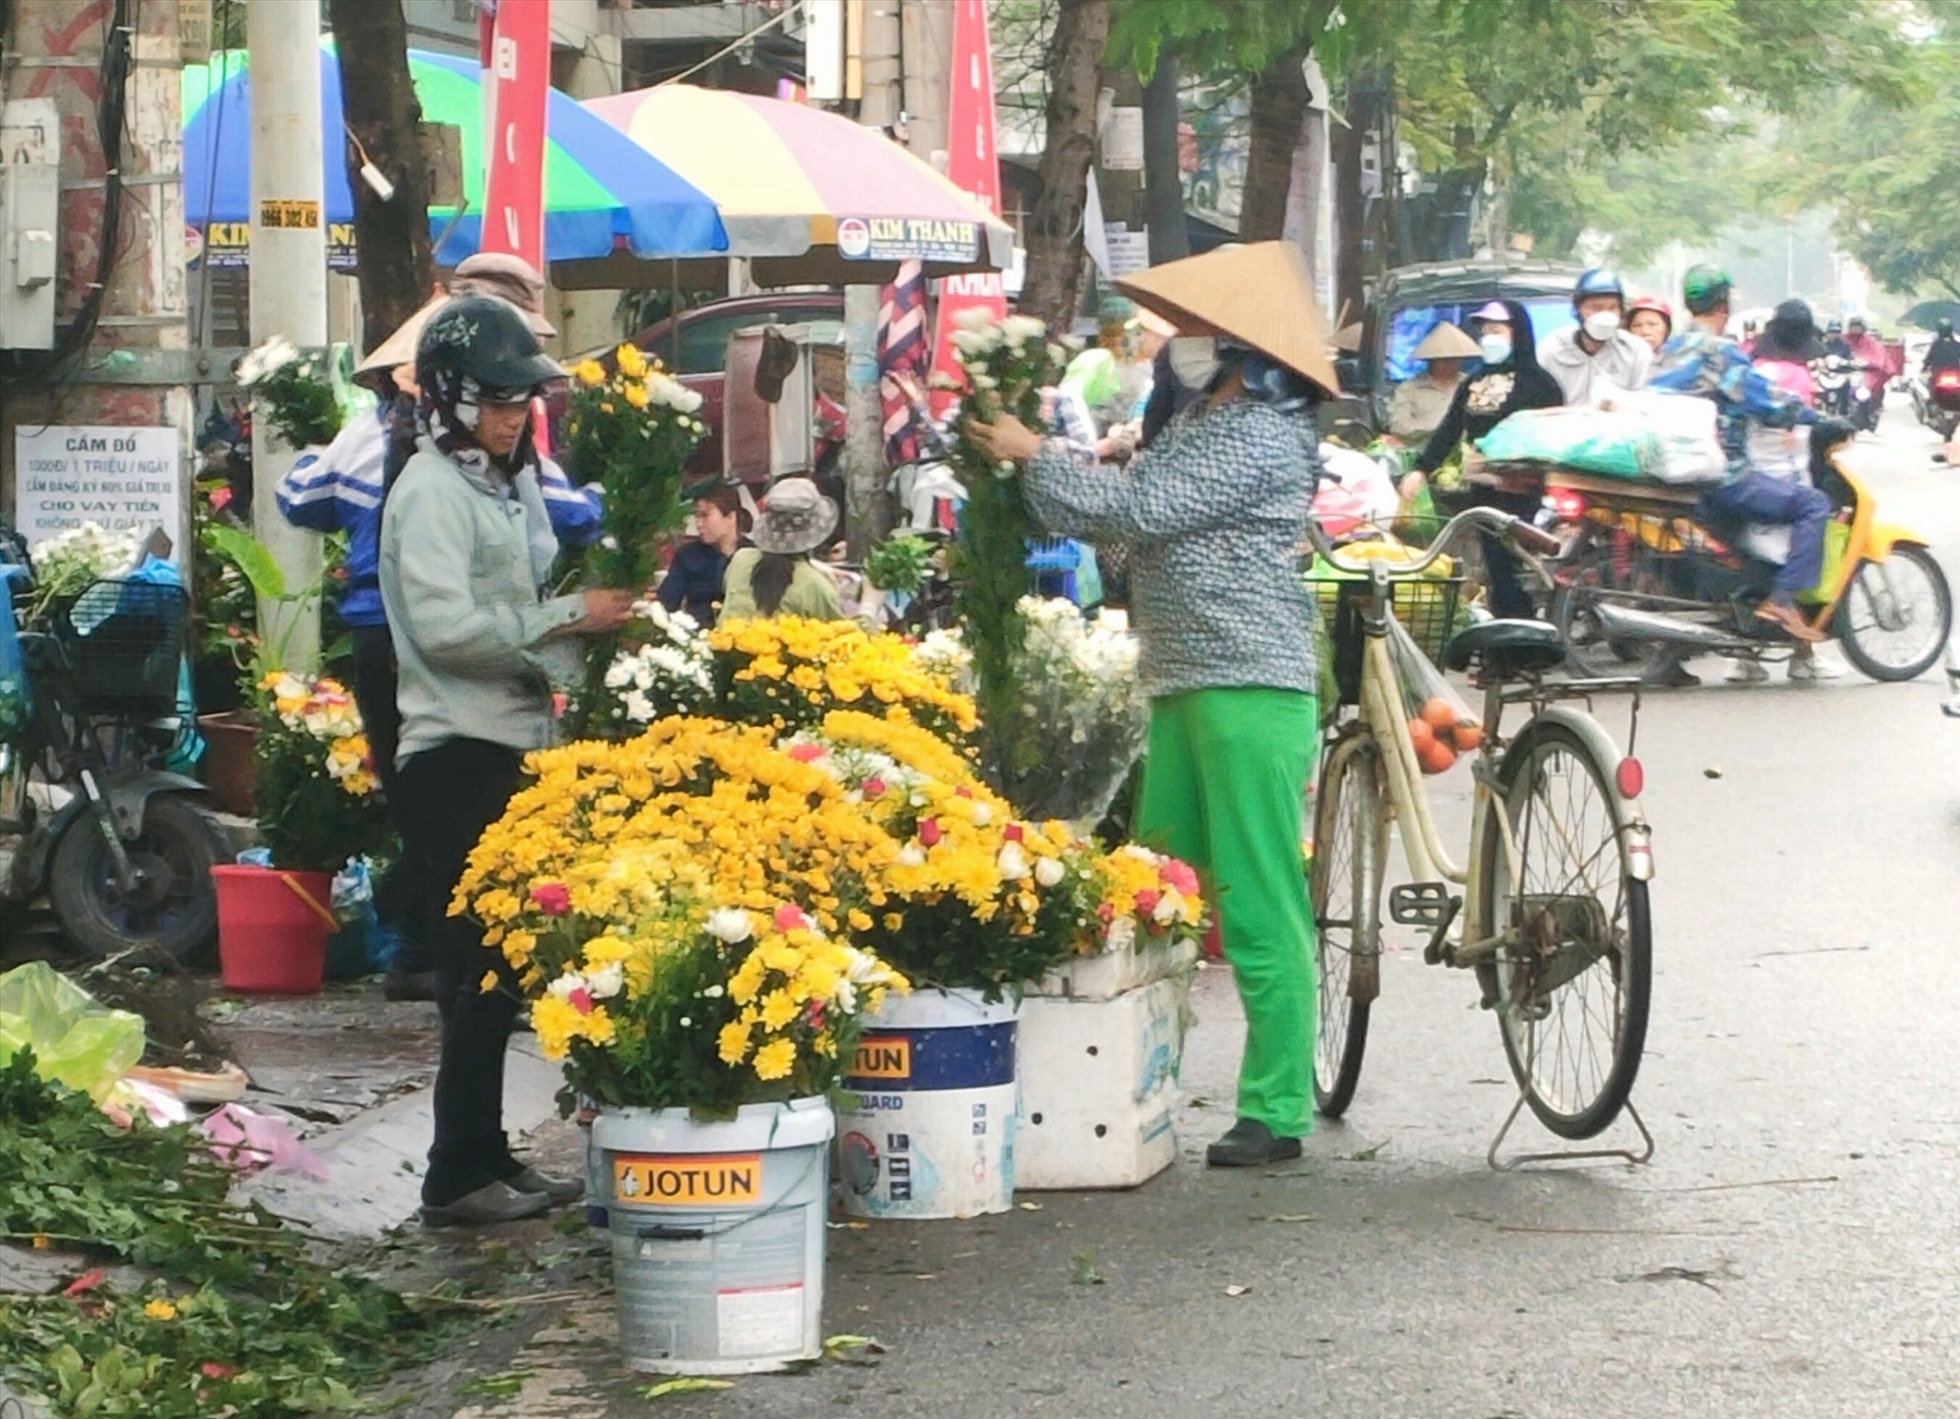 Các buổi sáng hàng ngày tại chợ Lương Văn Can, tình trạng sạp, quầy hàng rong tràn xuống đường còn tiếp diễn, gây mất mĩ quan đô thị, ảnh hưởng giao thông.